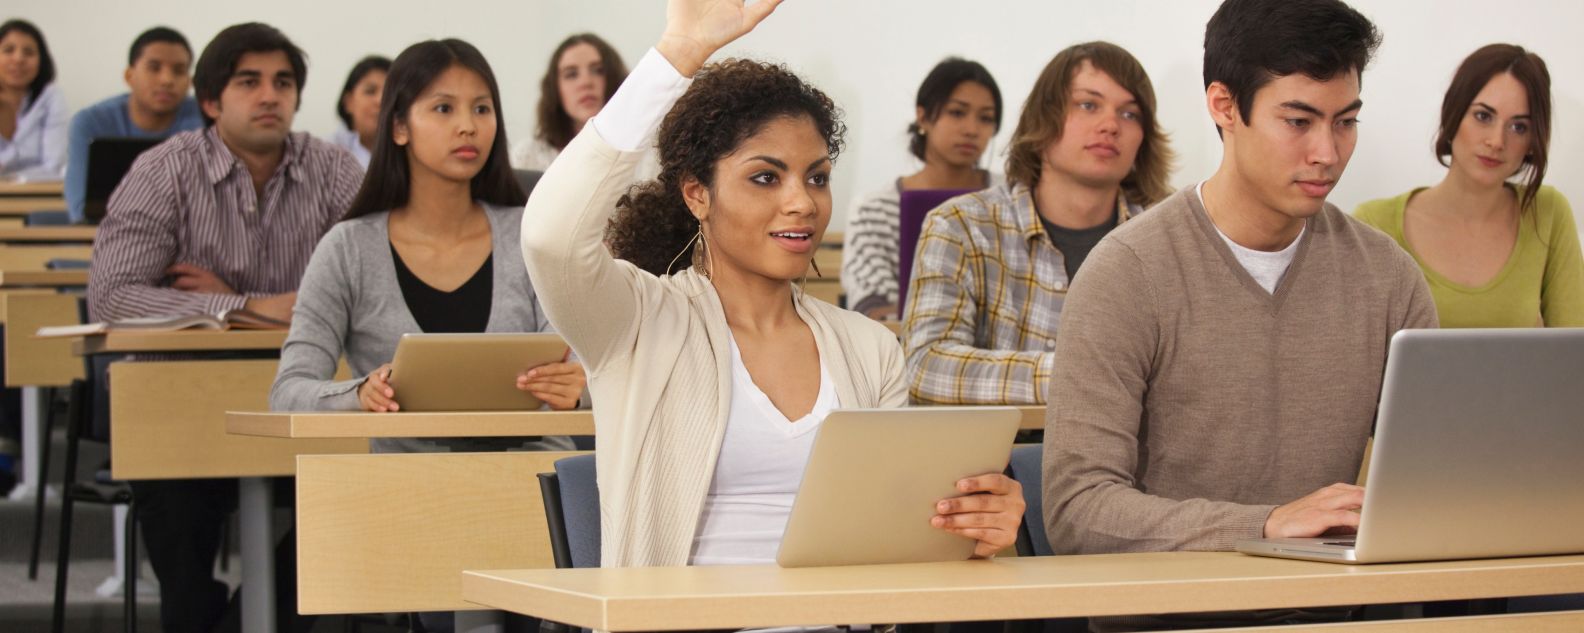 Mahasiswa mengangkat tangan di kelas